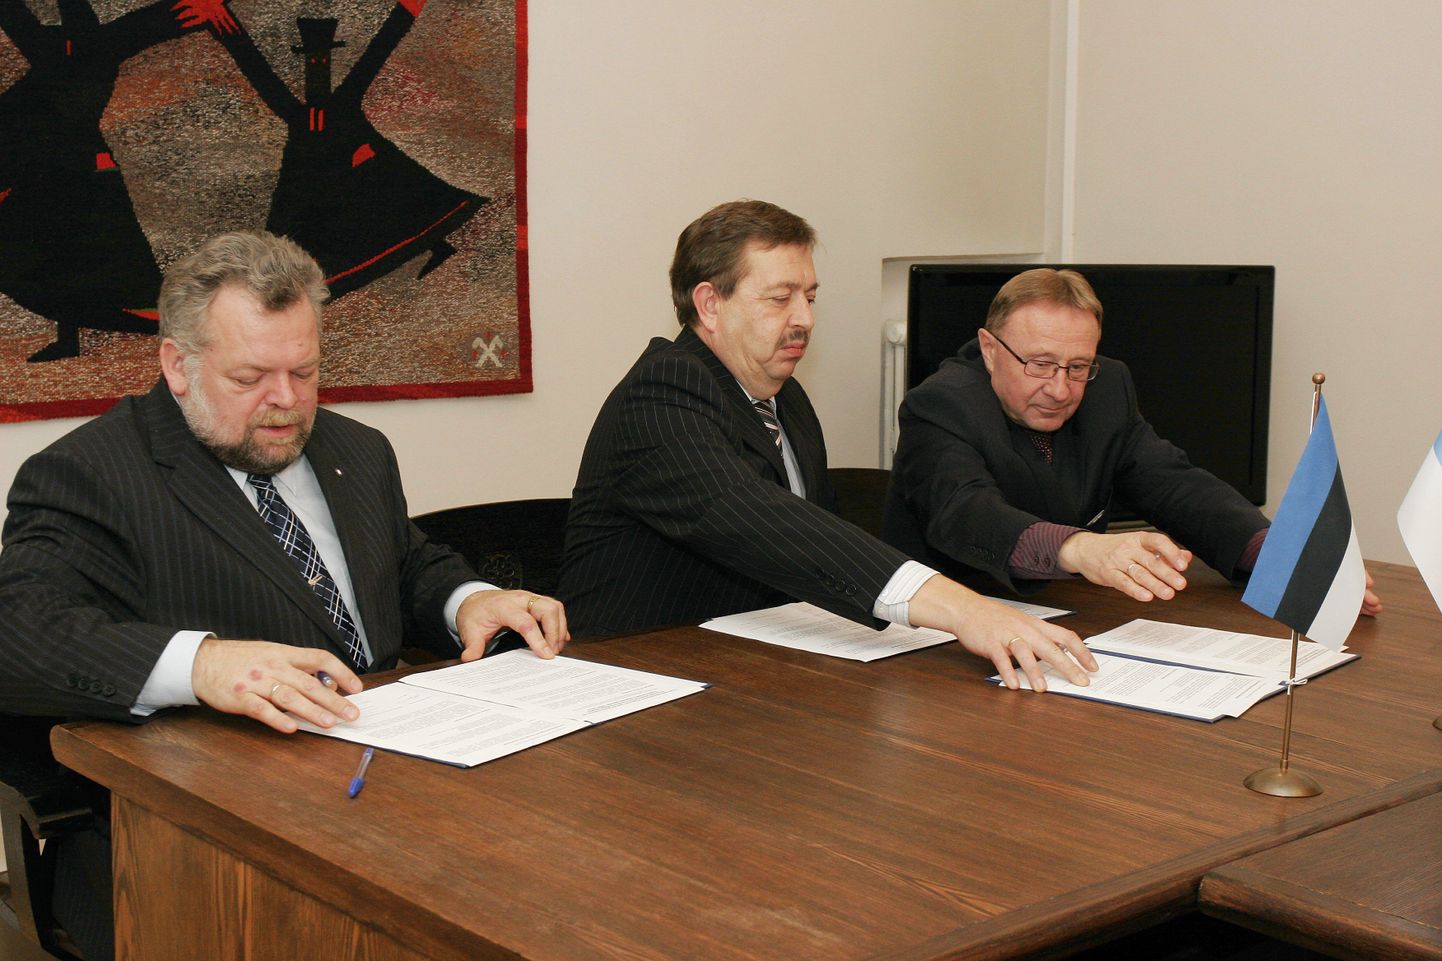 Võimulepingule kirjutasid alla Tarmo Loodus, Kalle Jents ja Rein Triisa.